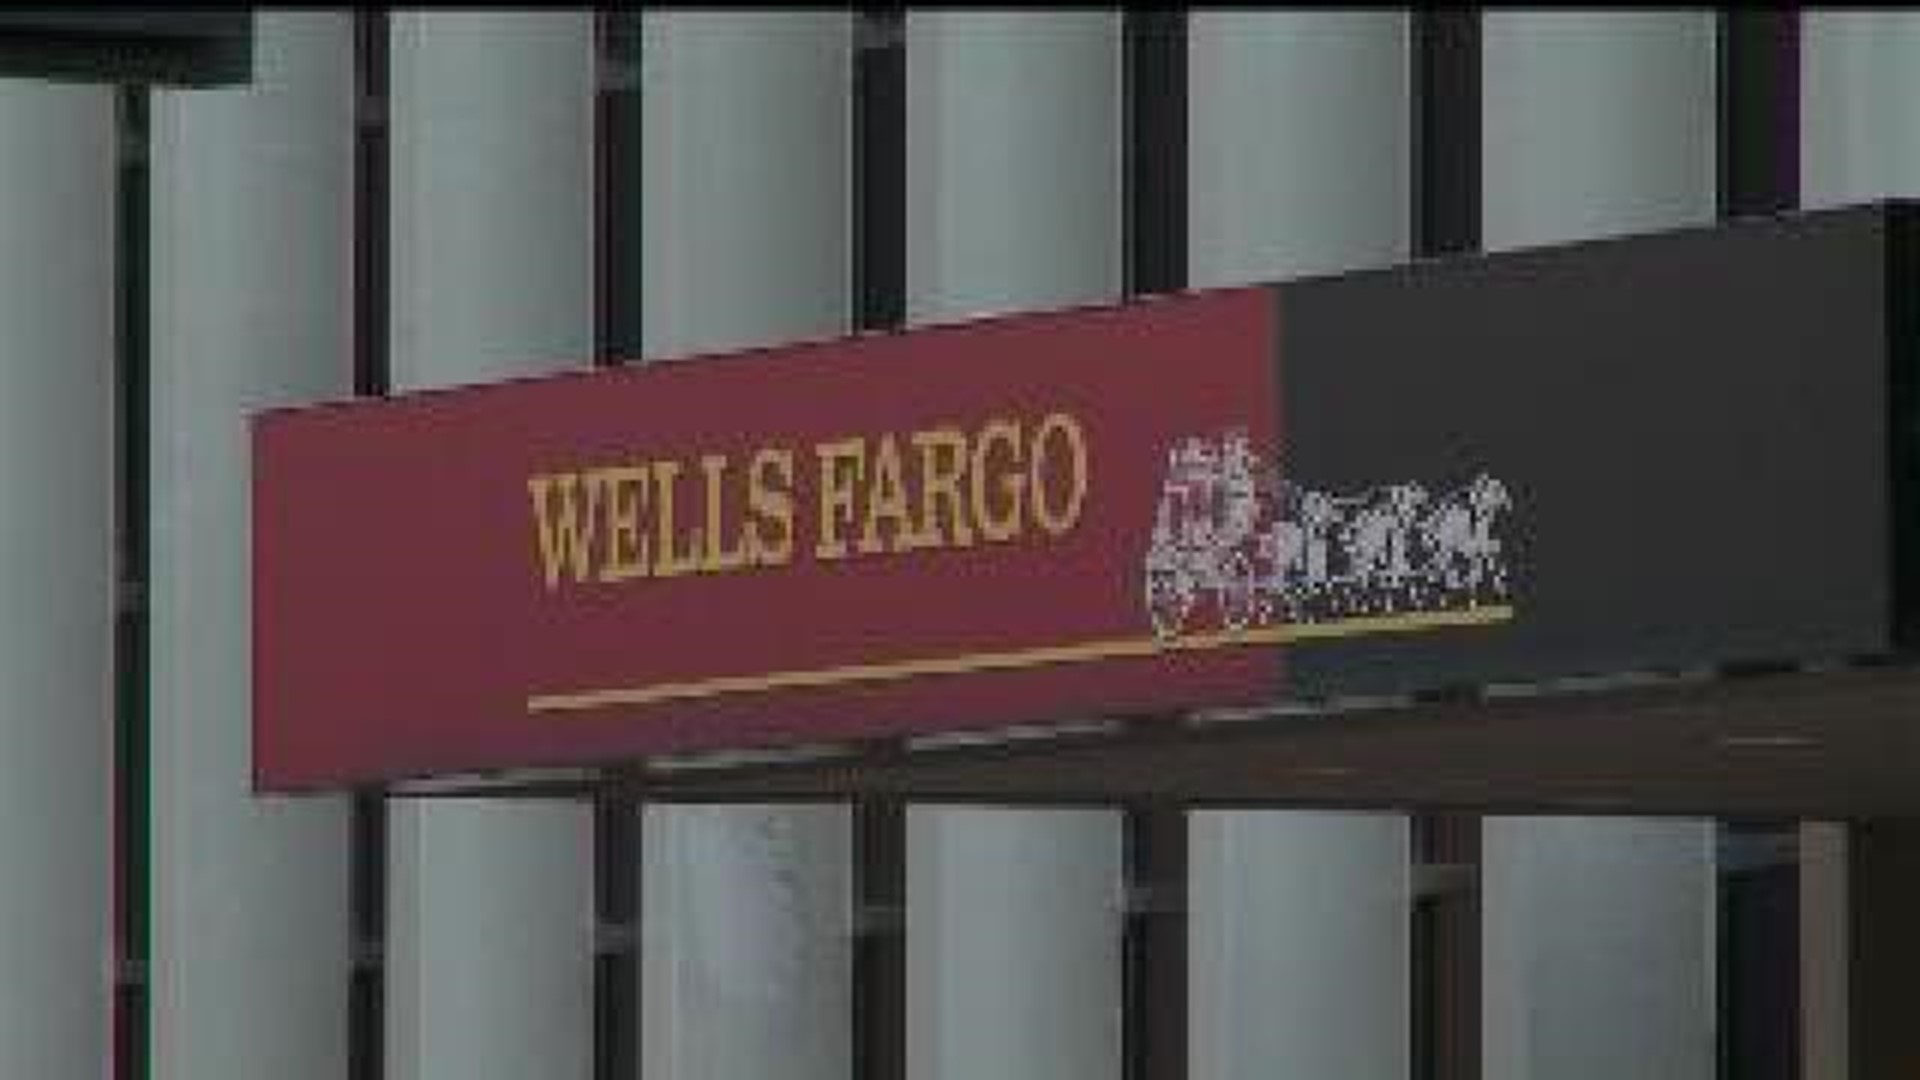 Wells Fargo lays off workers in Iowa